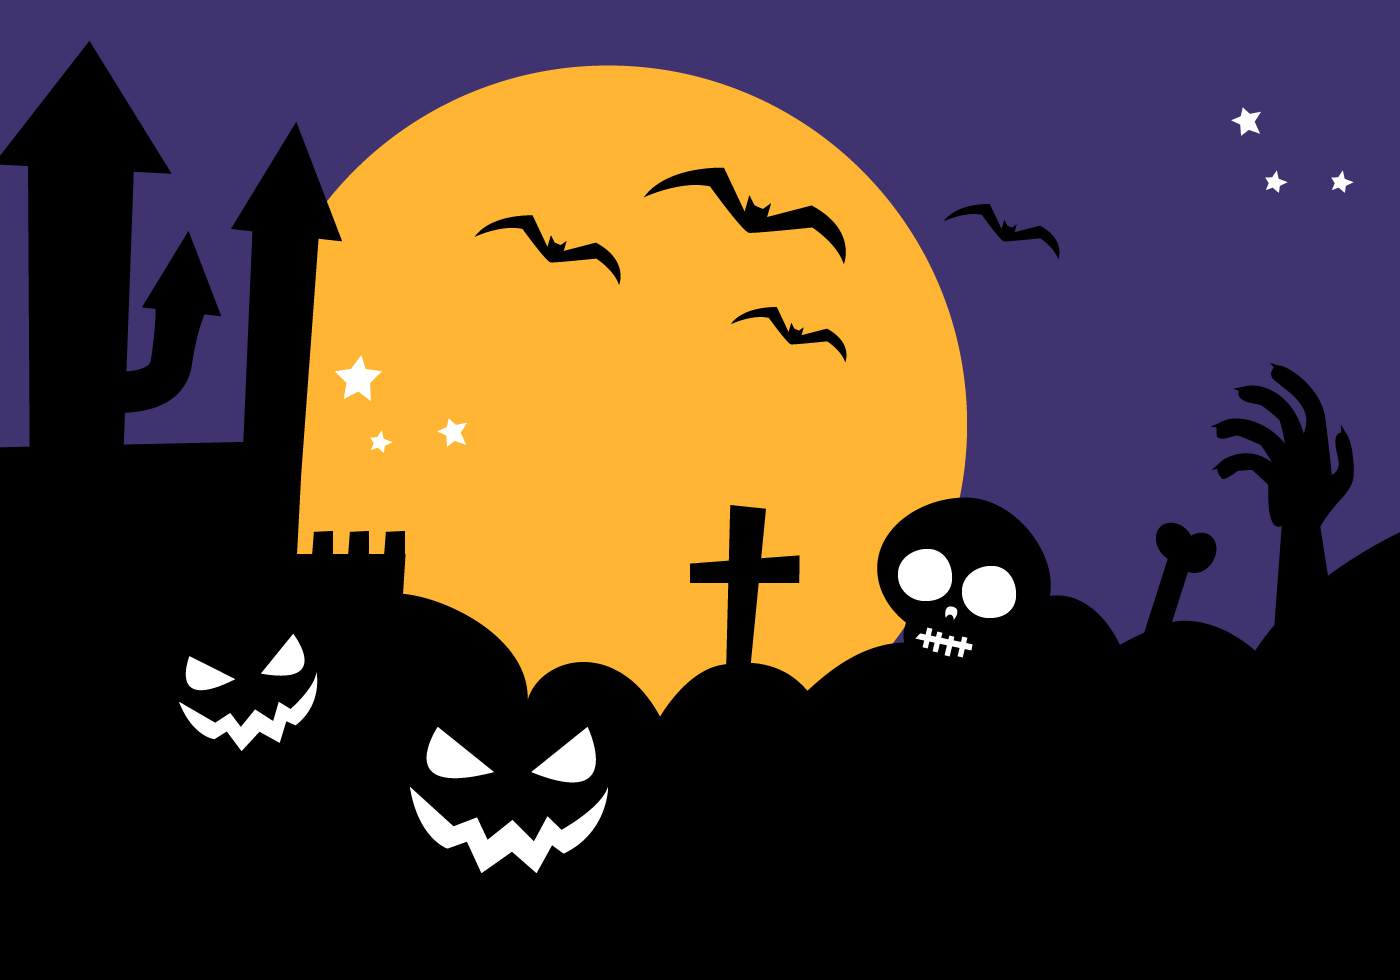 Free Halloween Background Vector - Download Free Vectors ...